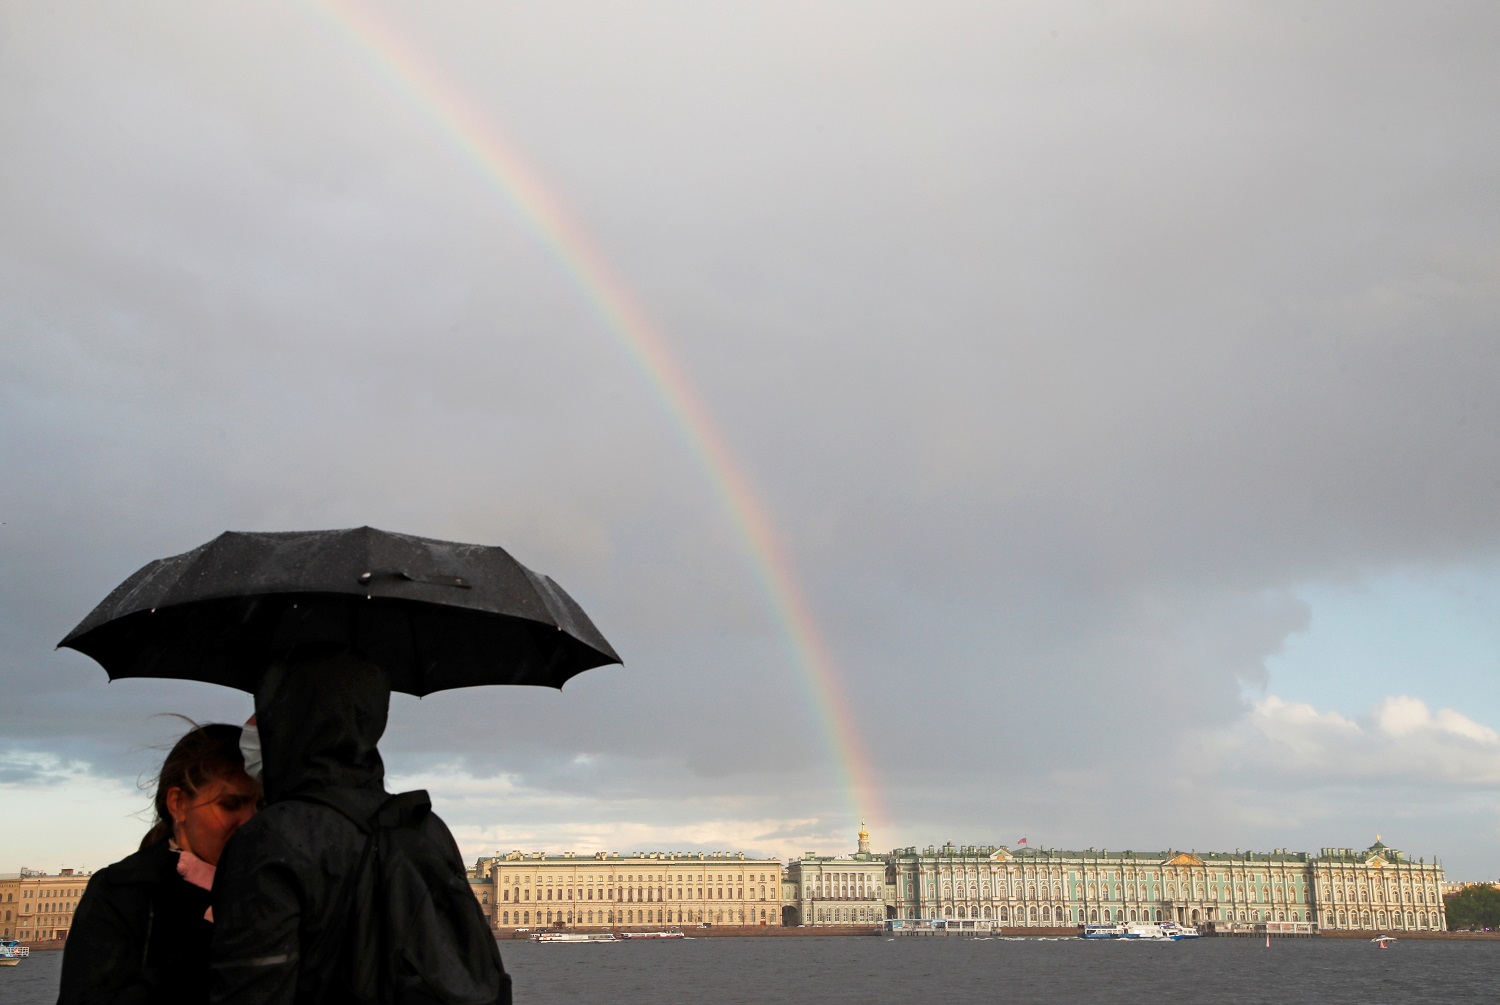 أشخاص يقفون على جسر بينما يظهر قوس قزح في السماء في سانت بطرسبرغ ، روسيا .22 أيار/مايو 2021. (رويترز)